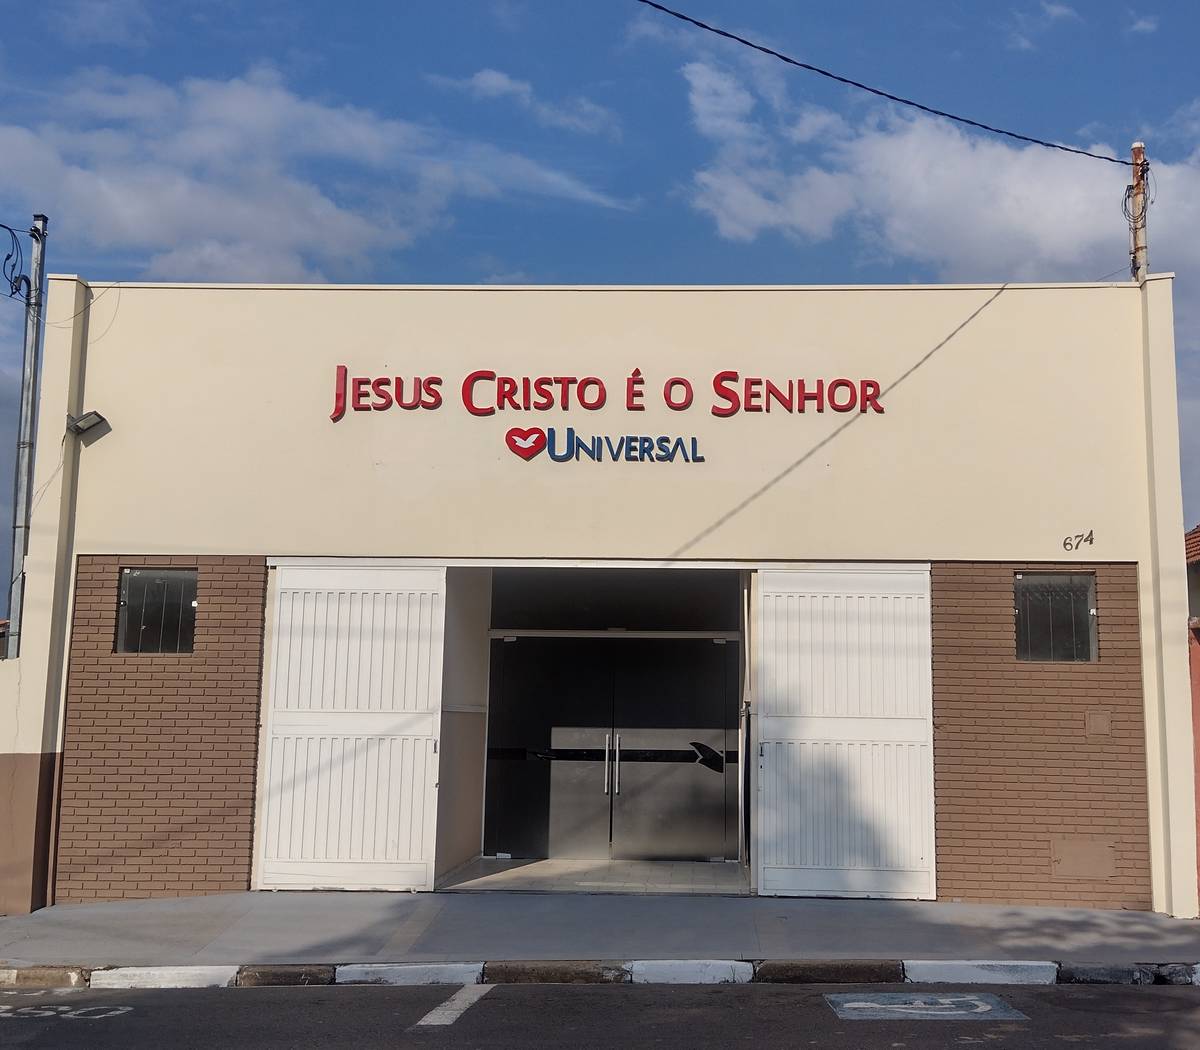 Igreja Universal ITAPIRA - Avenida Rio Branco, 674 - Centro, Itapira - São Paulo  - 13970070 - Brasil, 674 - Centro Itapira - São Paulo - Brasil